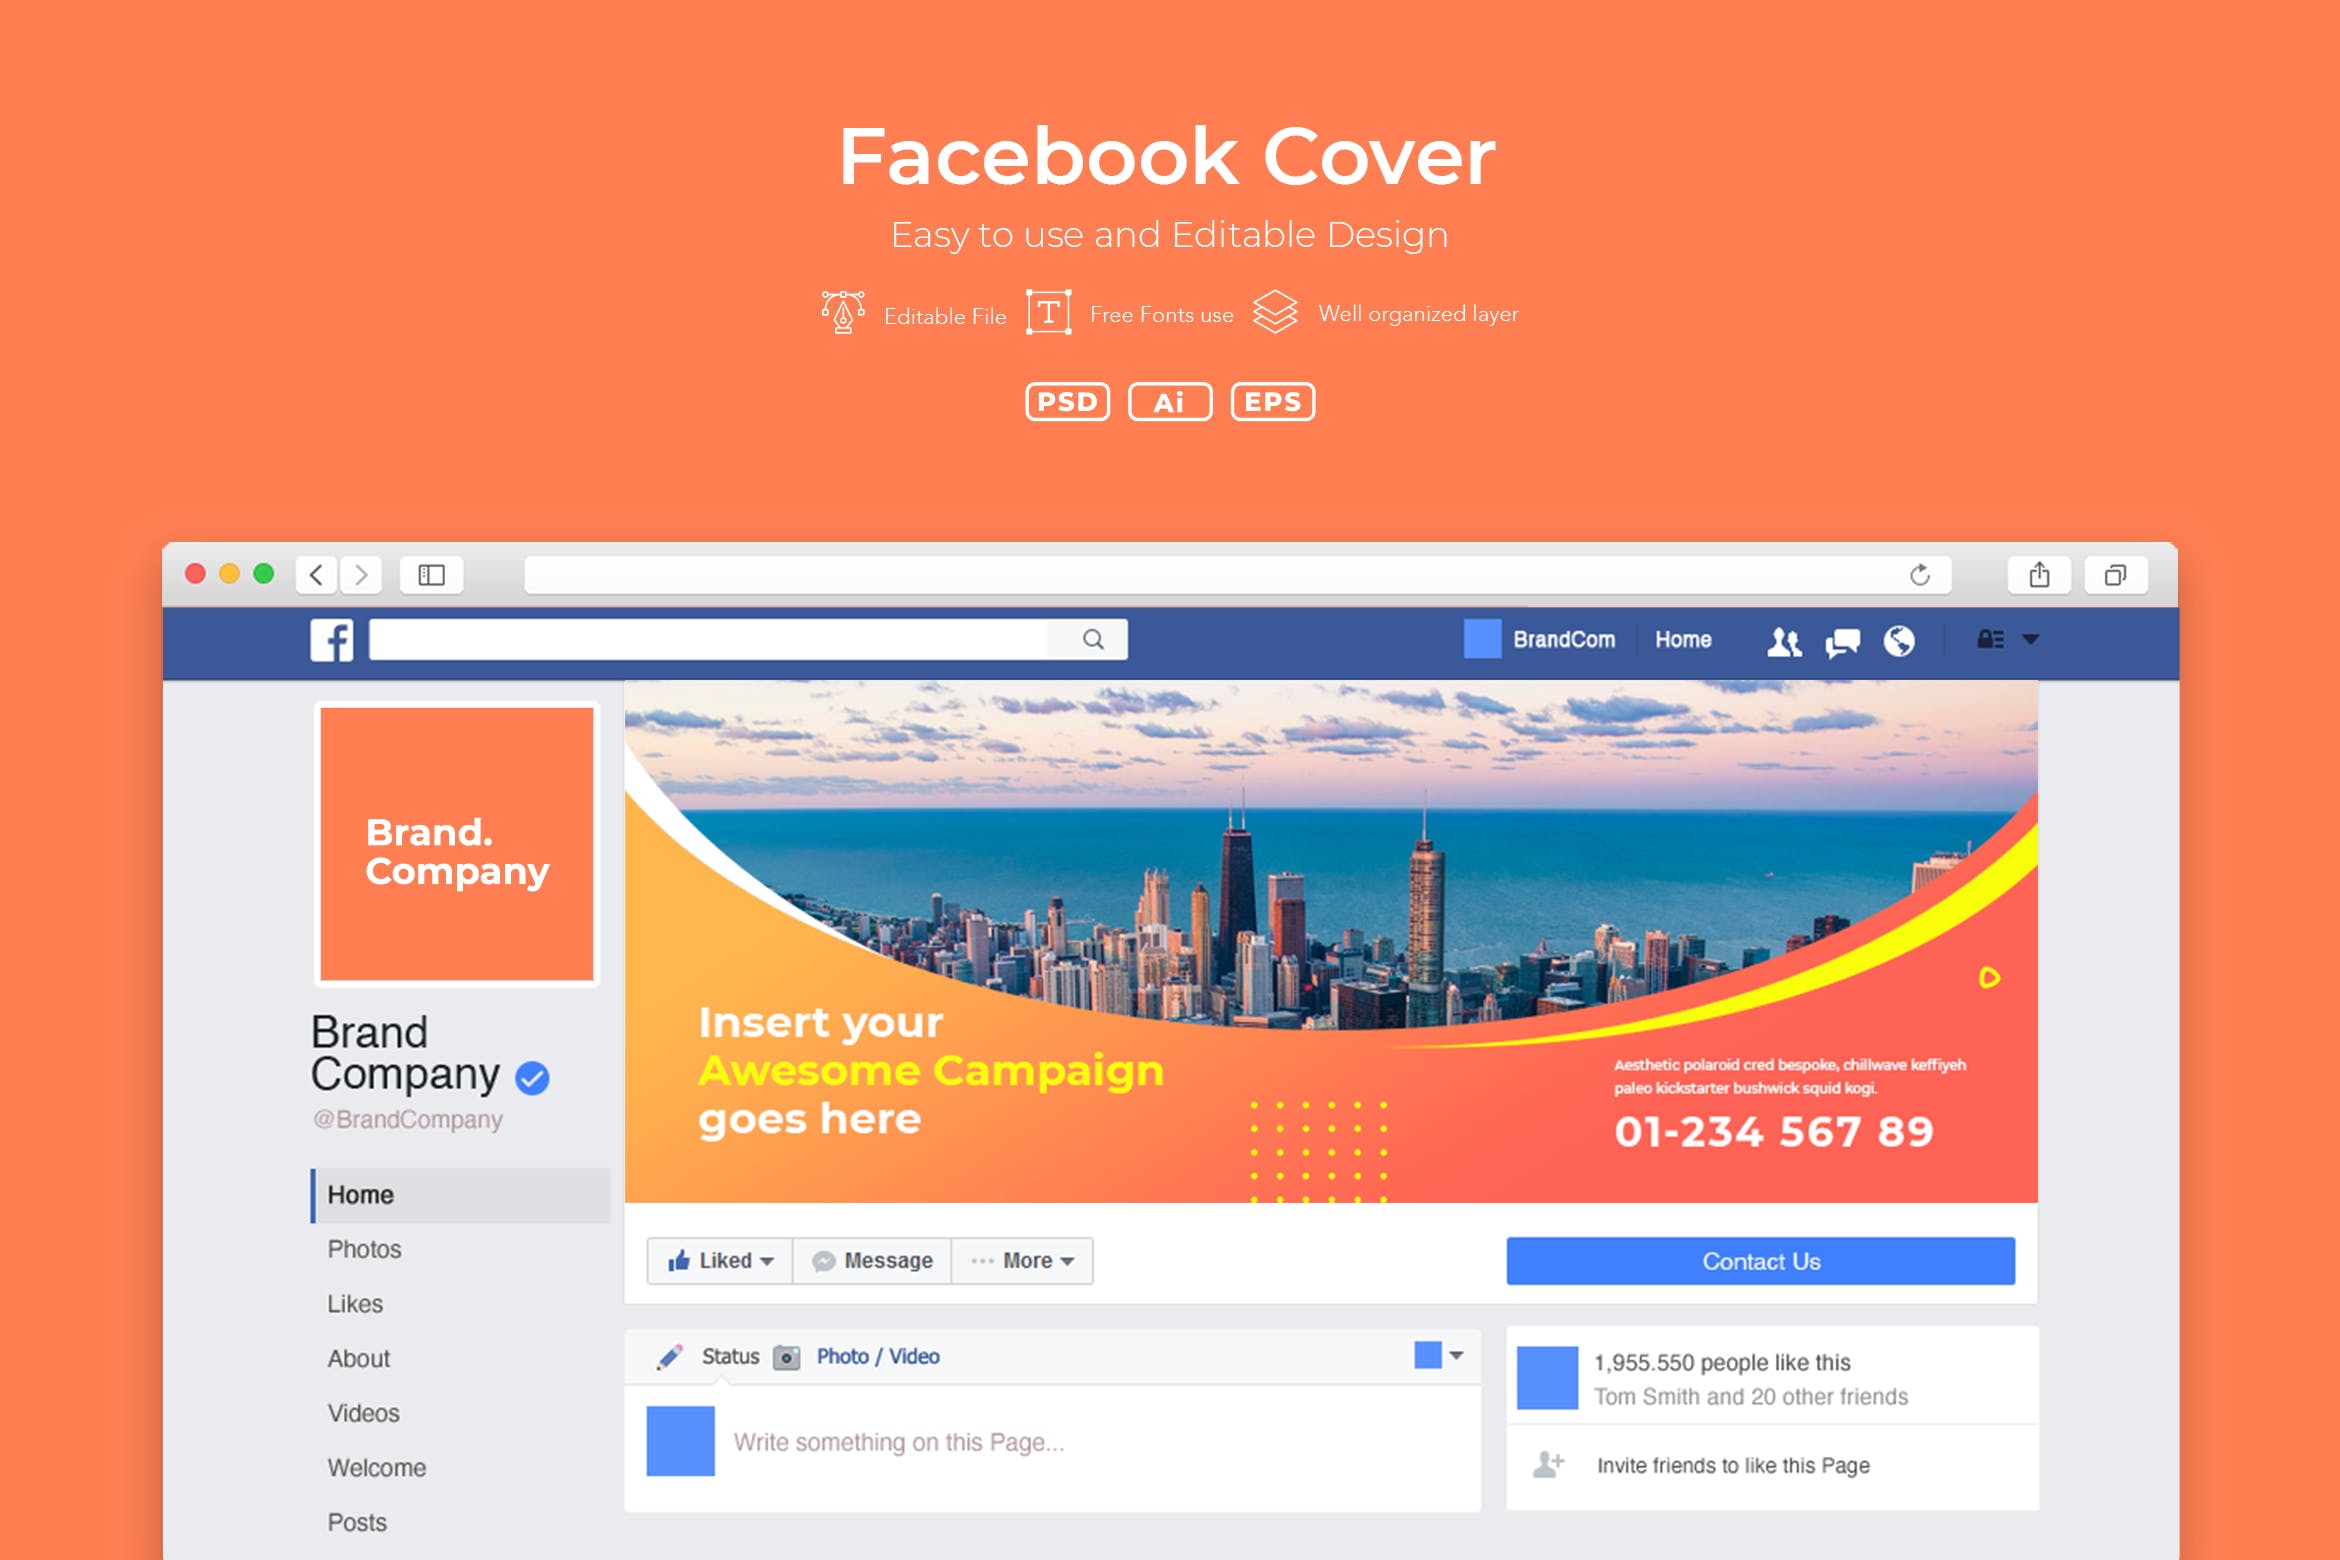 企业Facebook账号主页封面设计模板第一素材精选v2.3 ADL Facebook Cover.v2.3插图